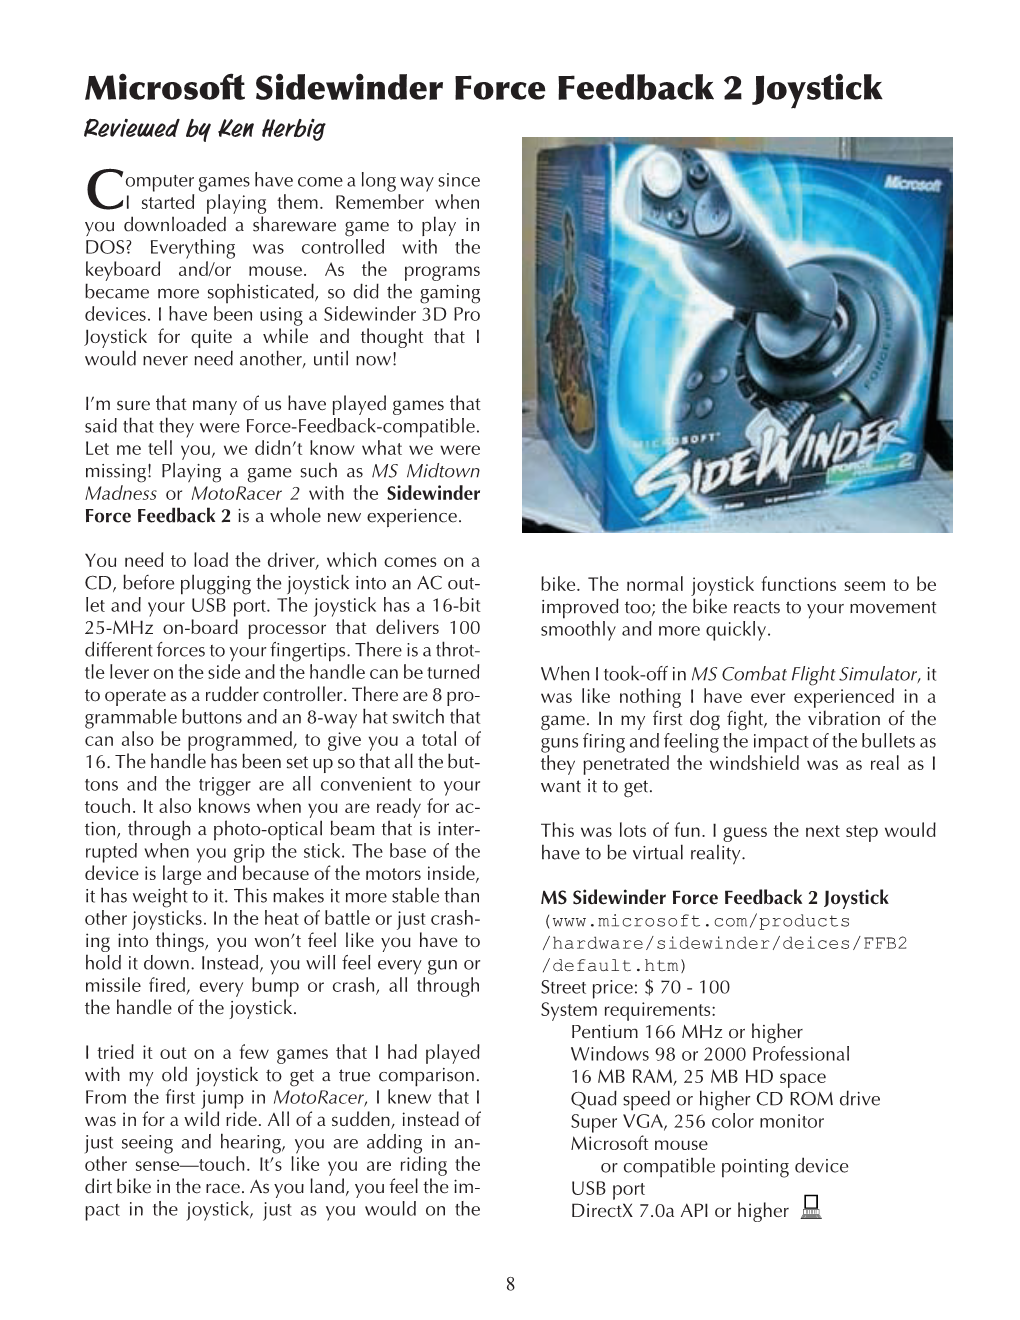 Microsoft Sidewinder Force Feedback 2 Joystick Reviewed by Ken Herbig